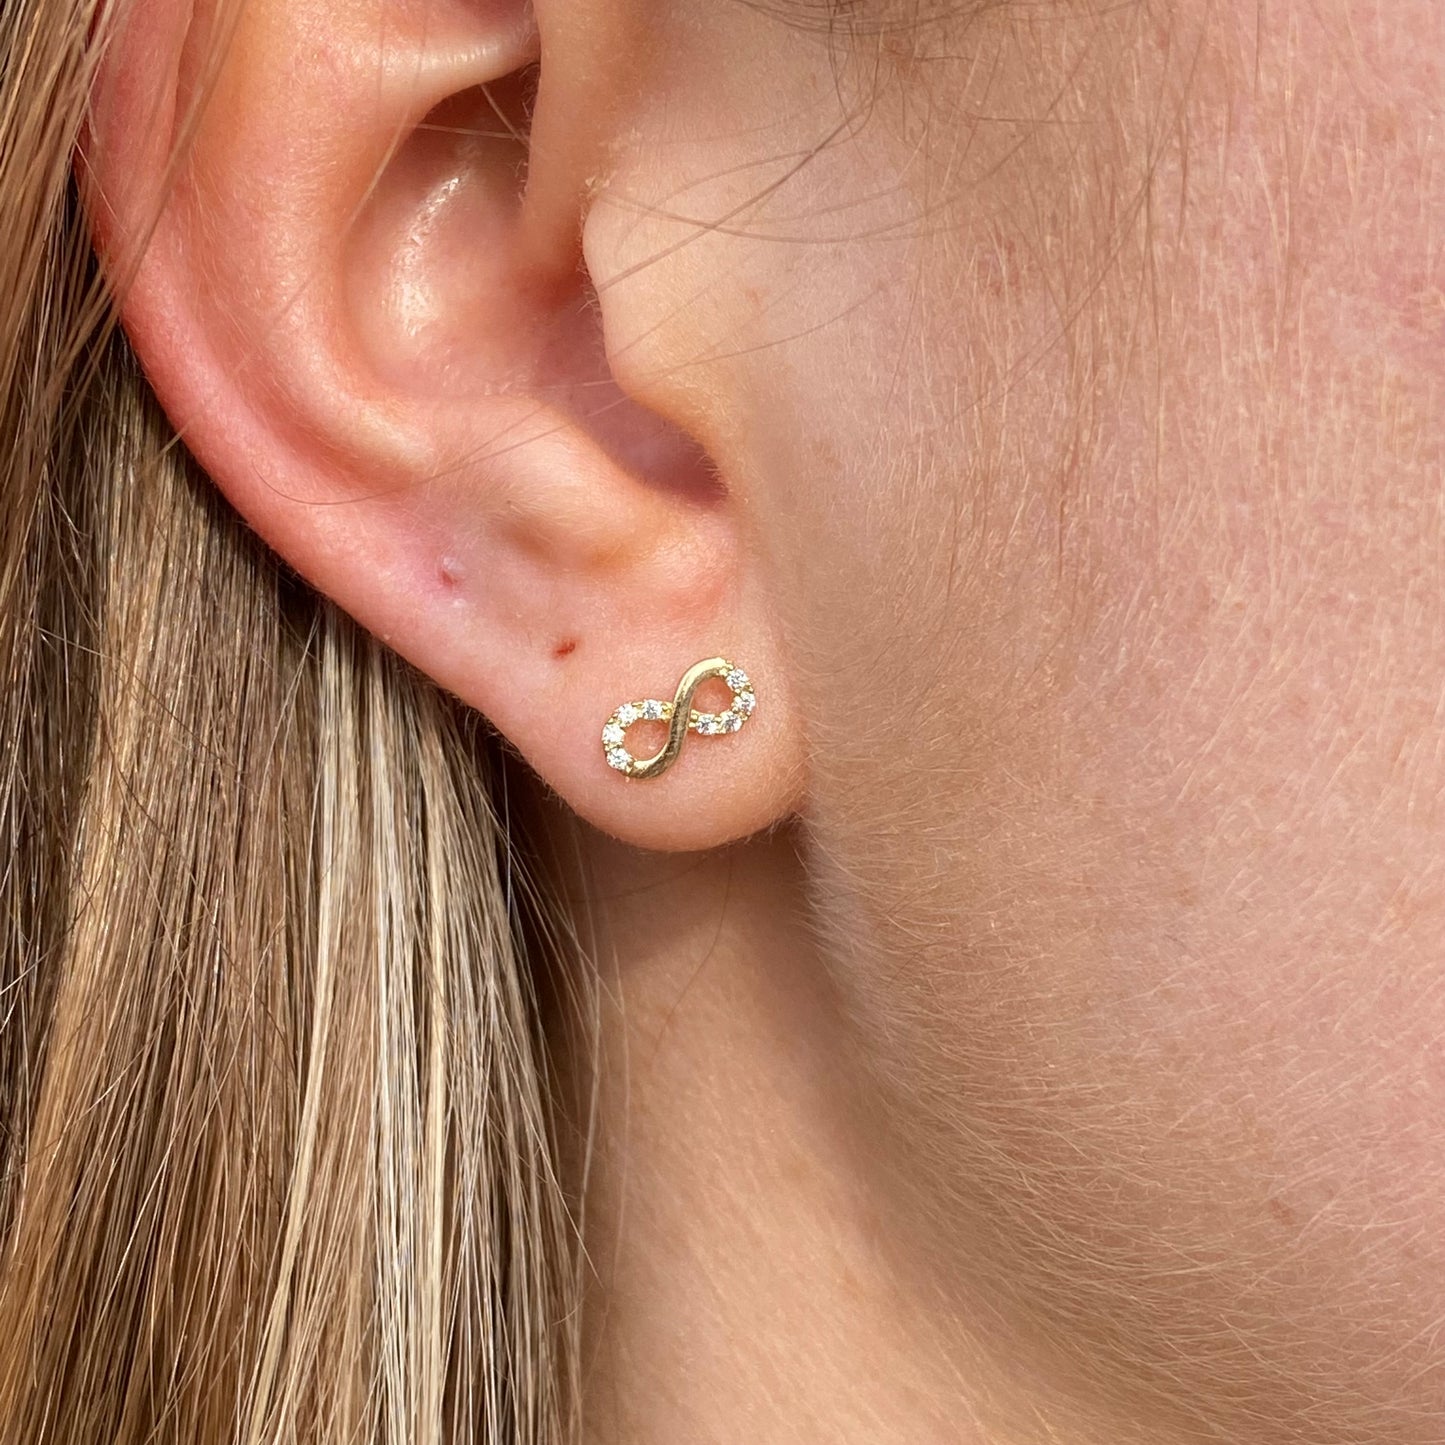 Ear Candy 9ct Gold CZ Infinity Stud Earrings - John Ross Jewellers